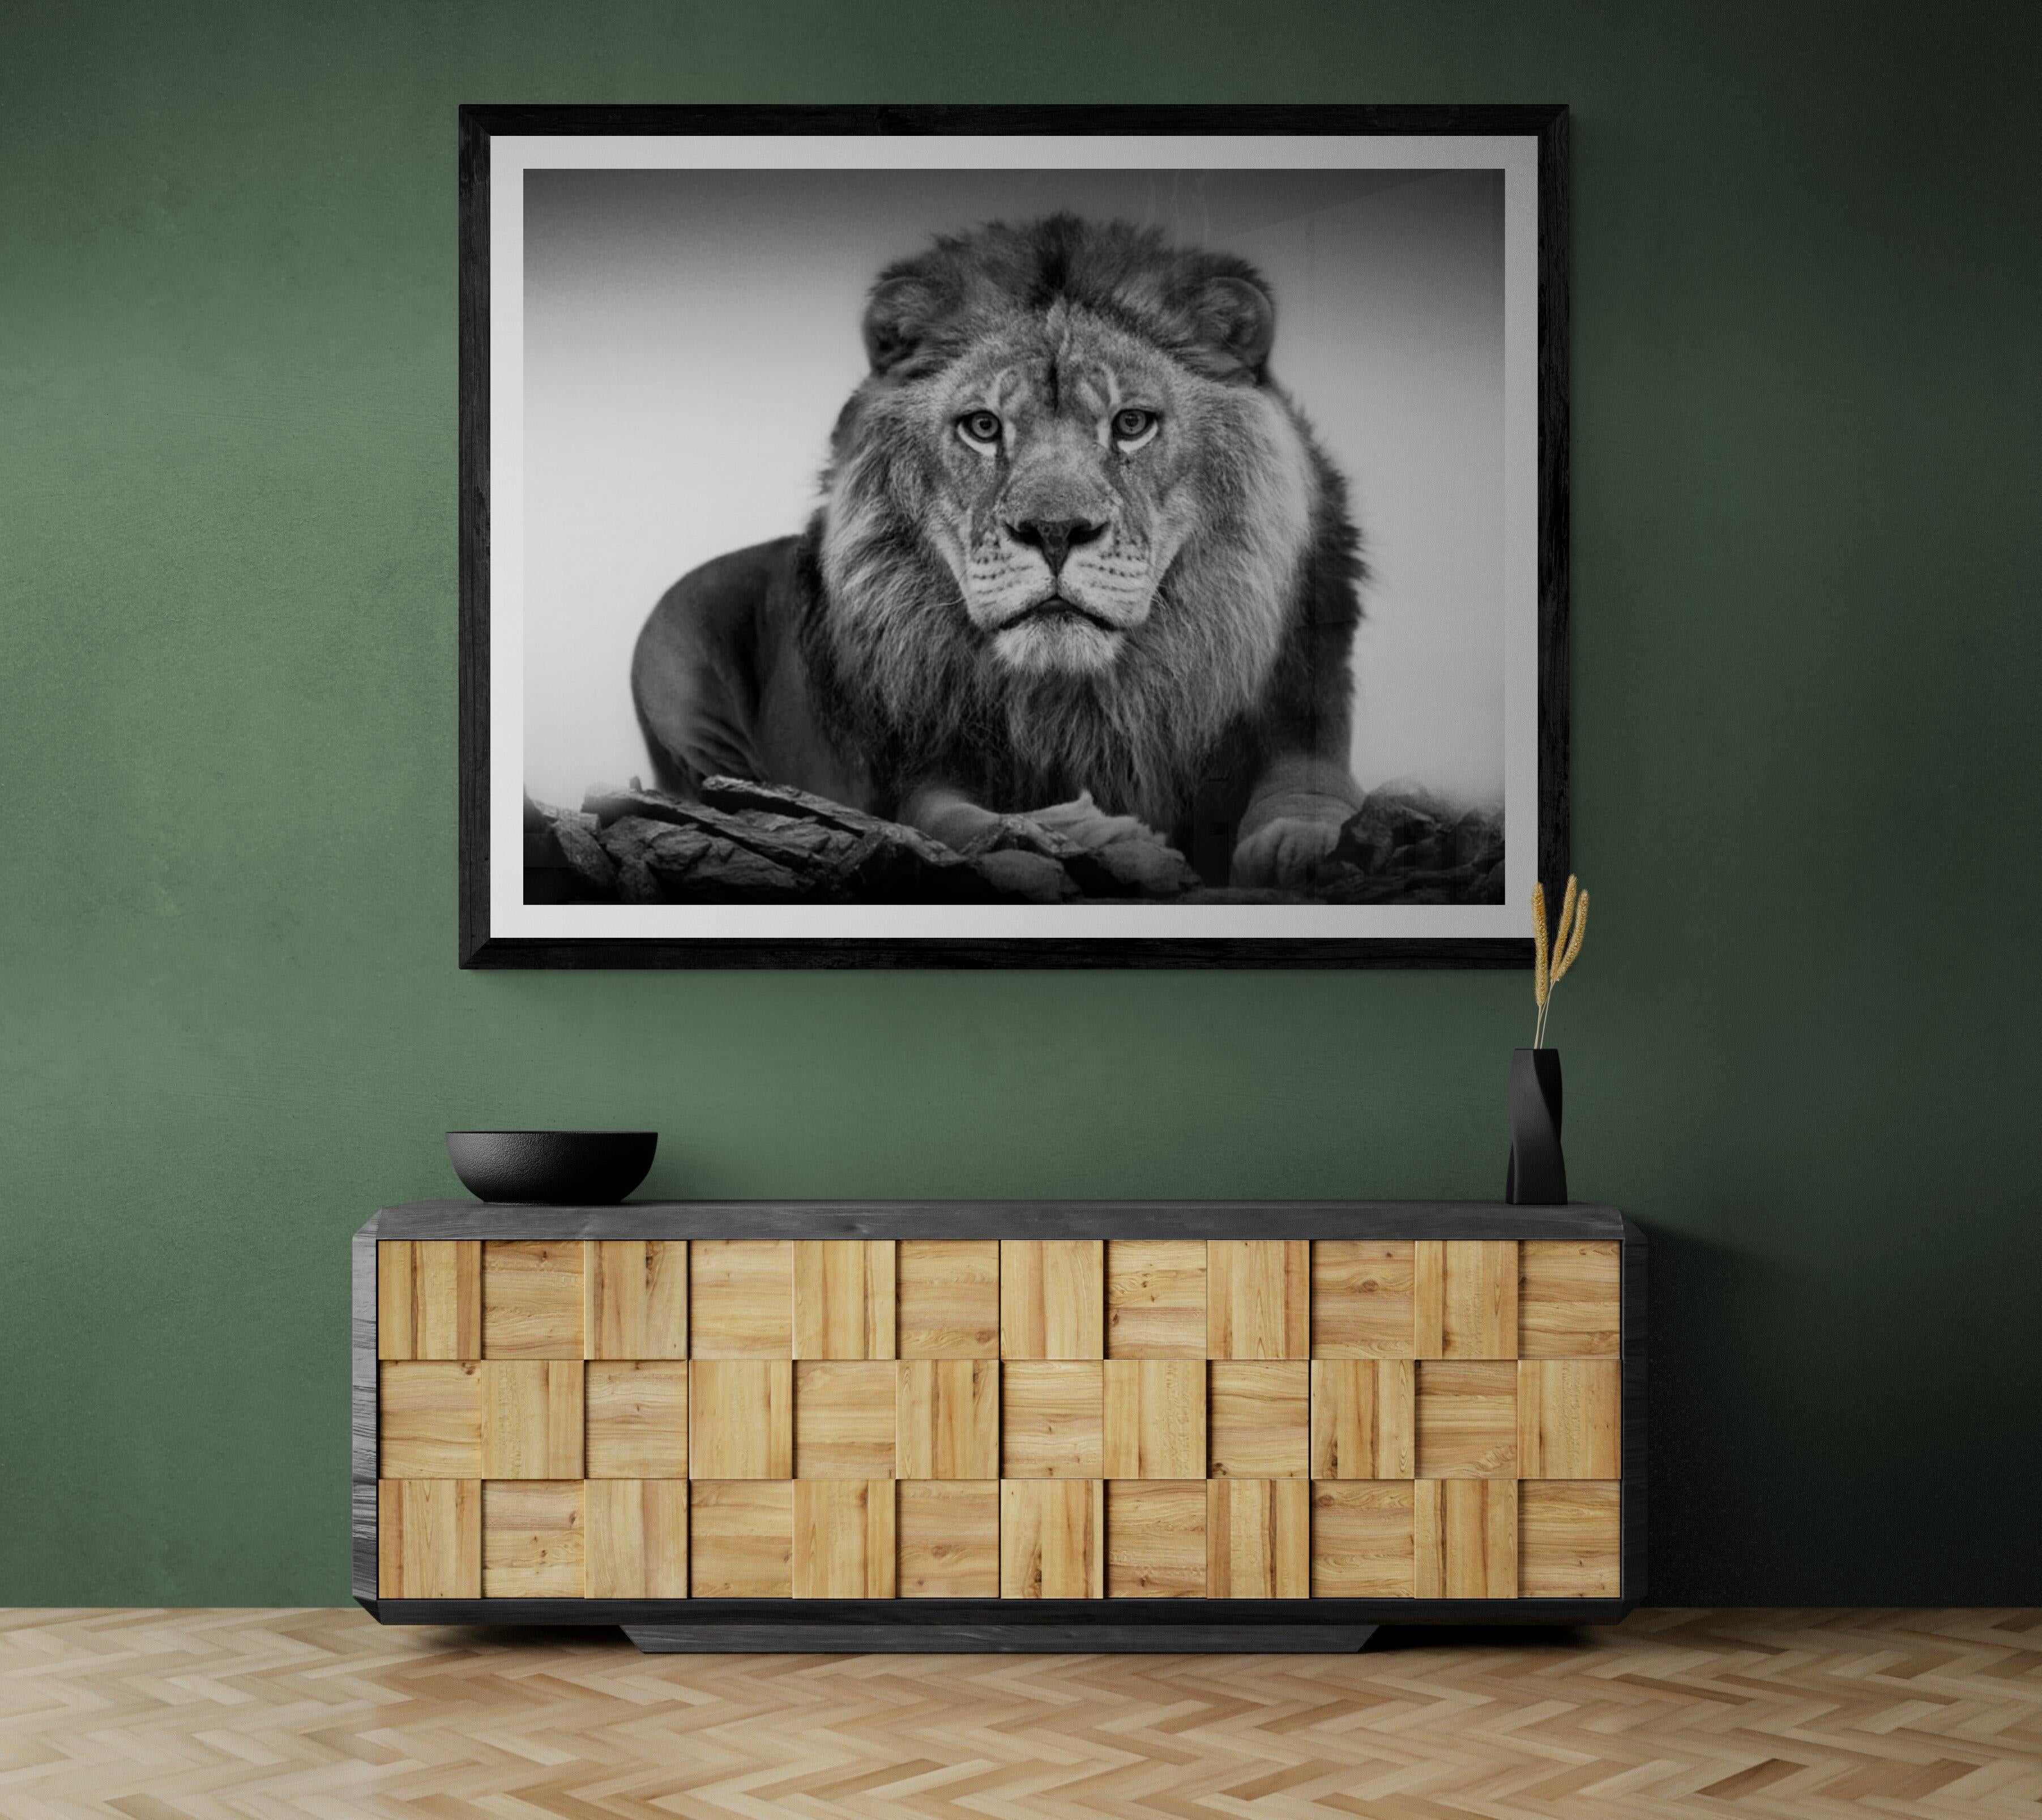 Il s'agit d'une photographie contemporaine d'un lion africain. 
40x60
Signé et numéroté
Edition de 10
Impression au pigment d'archivage.
Encadrement disponible. Renseignez-vous sur les tarifs. 

LIVRAISON GRATUITE

Shane Russeck s'est forgé une